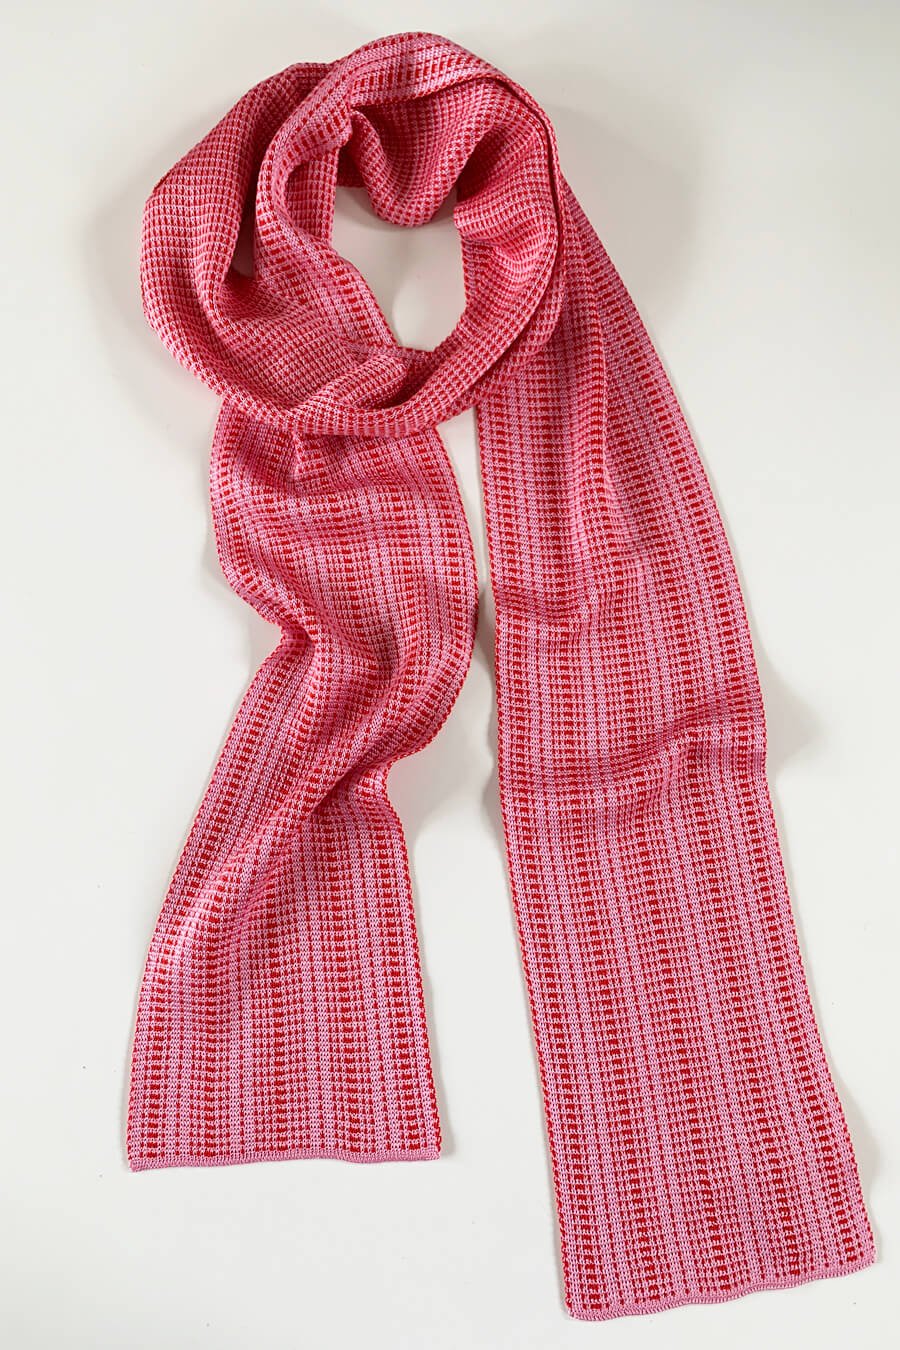 Designer Silk Scarves, Made in Scotland — Collingwood-Norris